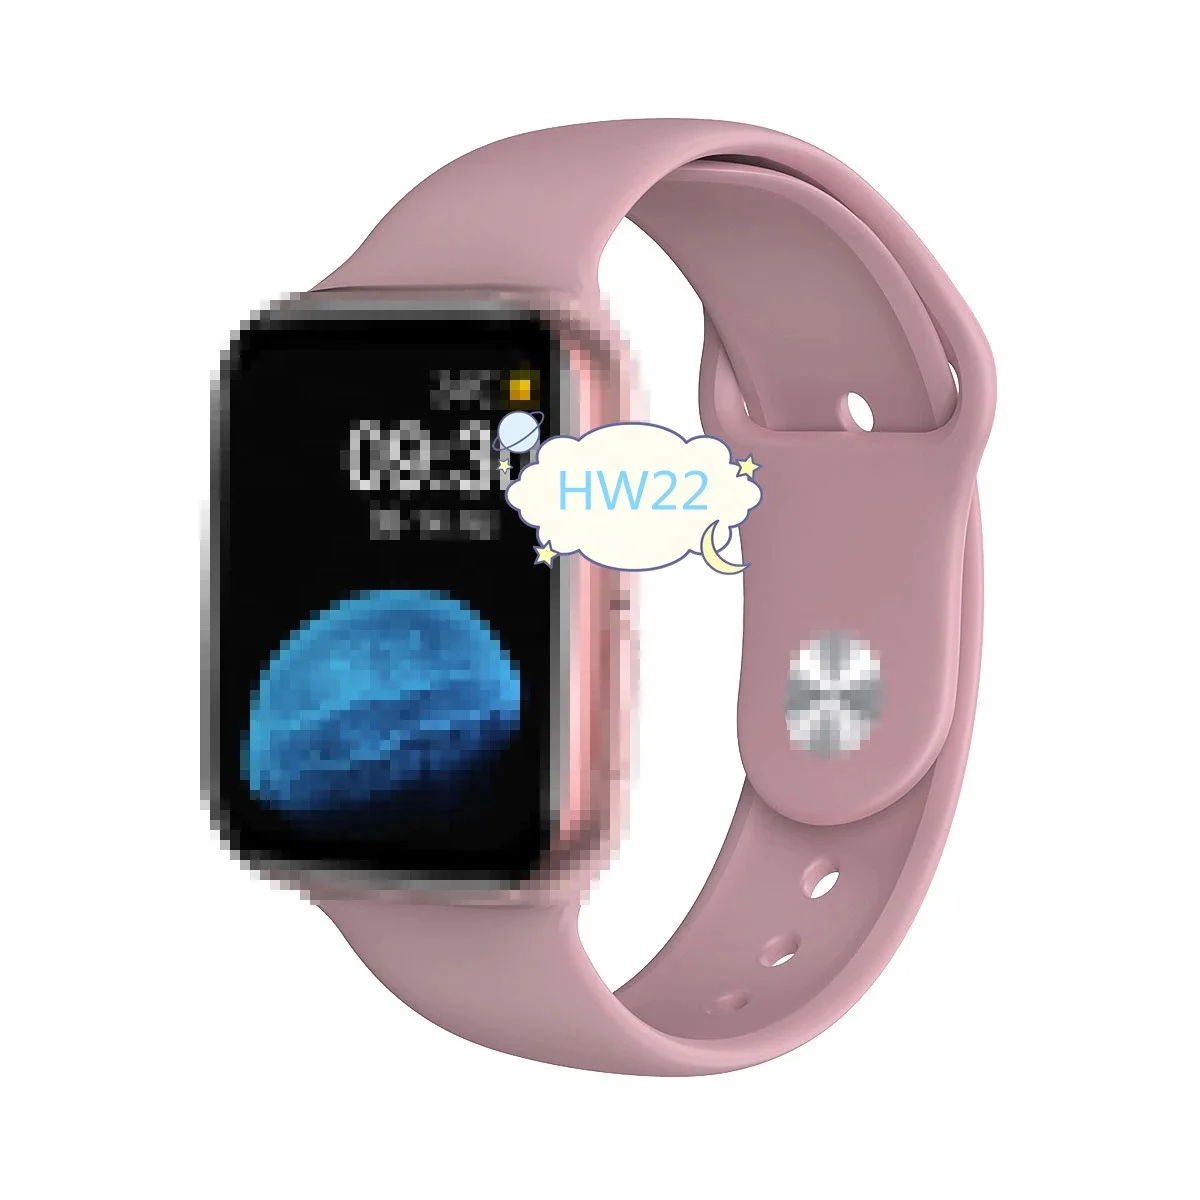 

HW22 sport Smart Watch1.75 inch Full Screen bt call 44mm reloj series 6 smartwatch PK iwo 12 pro w46 w26 hw12 hw16, Black, pink, white,red, blue